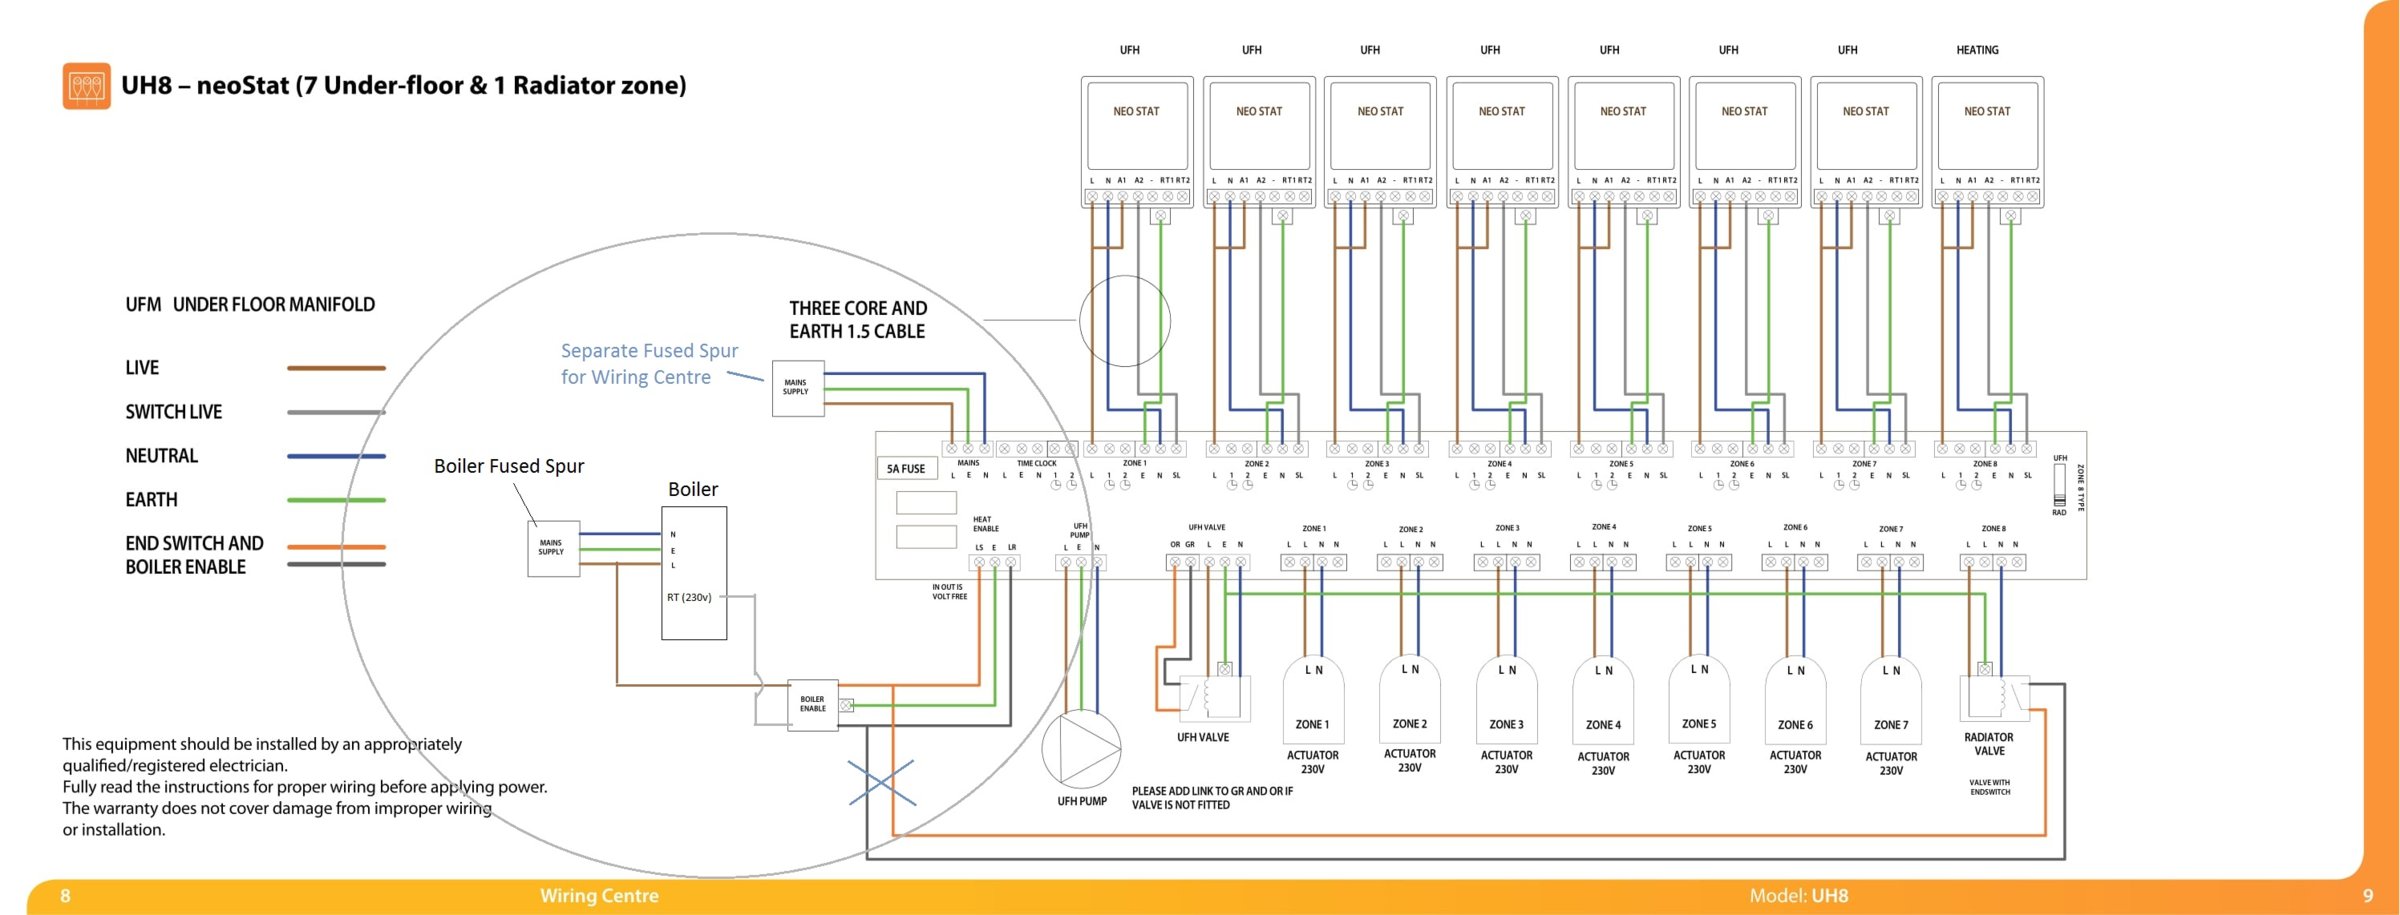 Vaillant Ecotec Plus 831 Wiring Diagram - Wiring Diagram